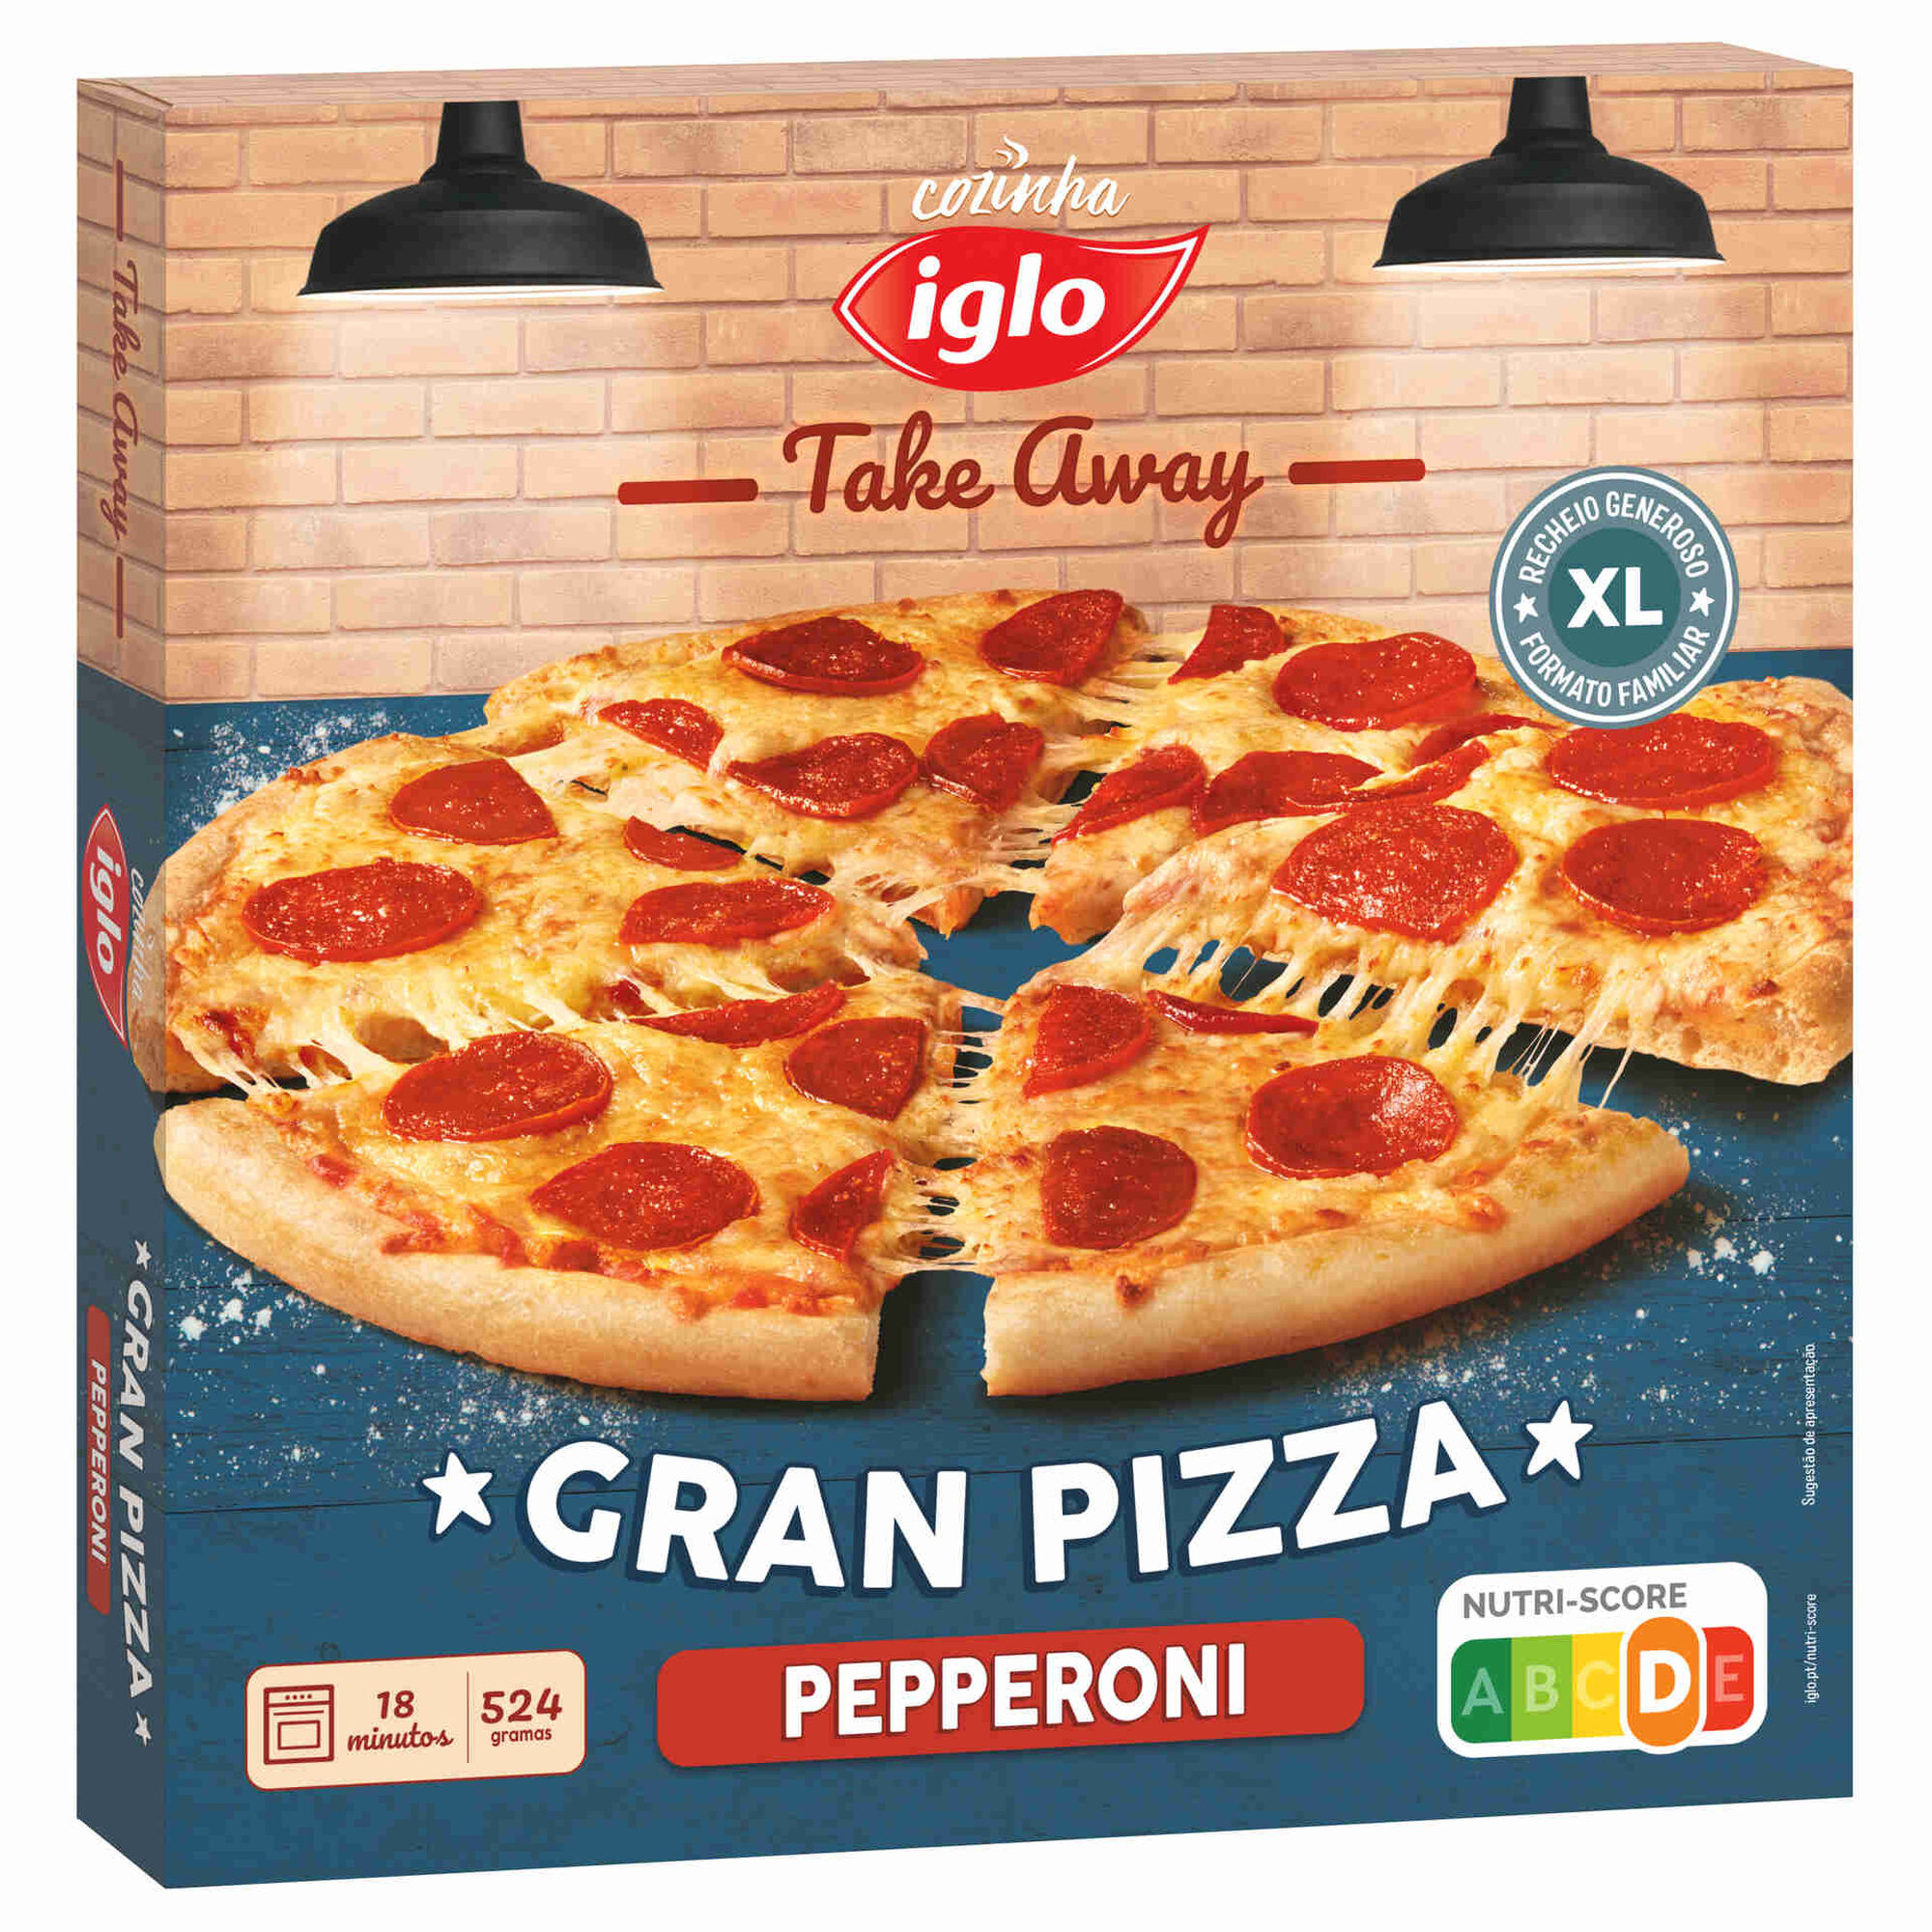 Pizza De Cozimento - Jogo De C – Apps no Google Play